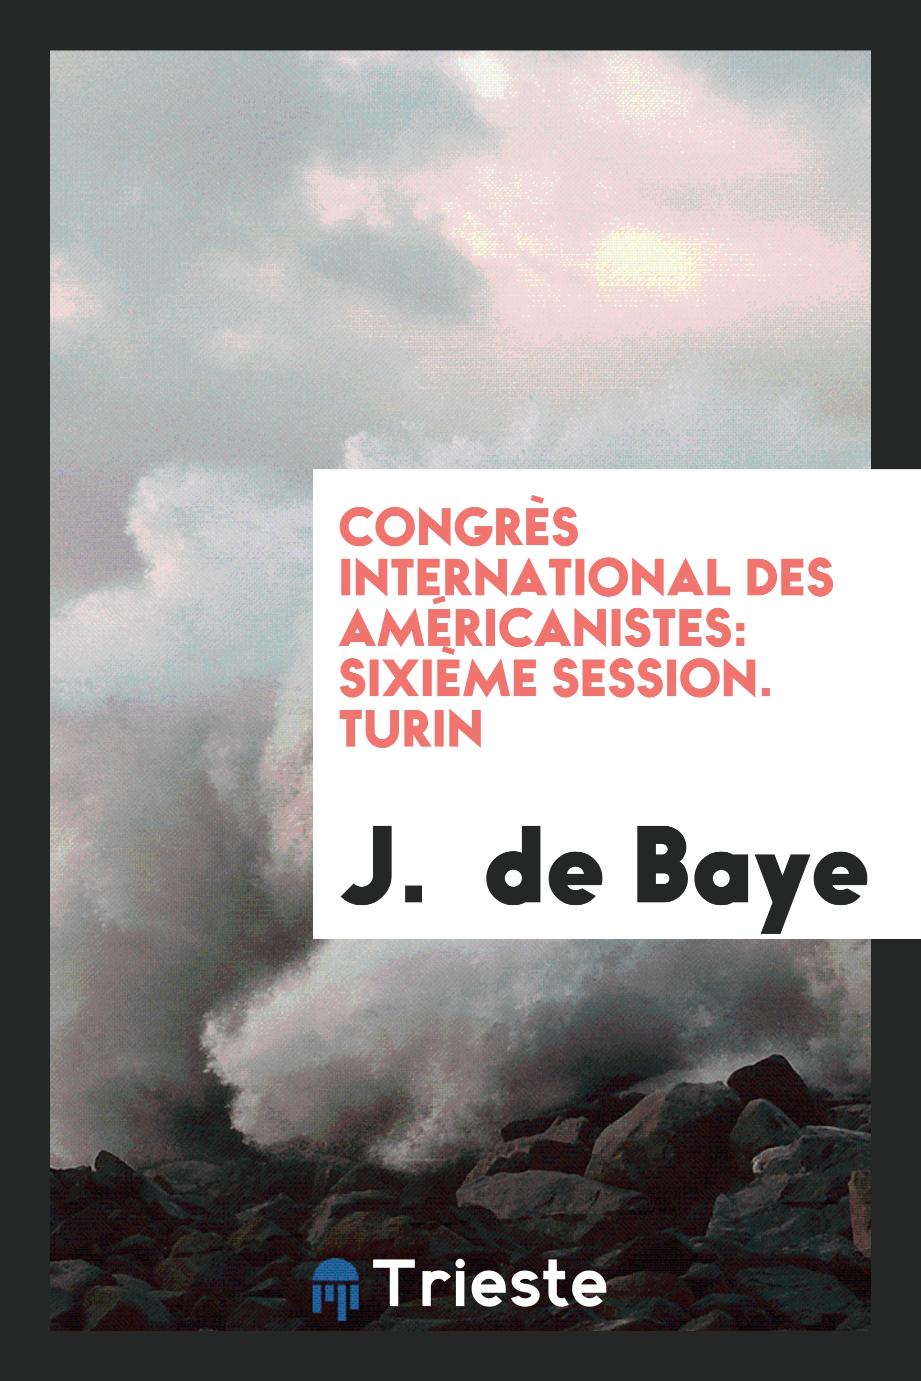 J.  de Baye - Congrès international des américanistes: sixième session. Turin